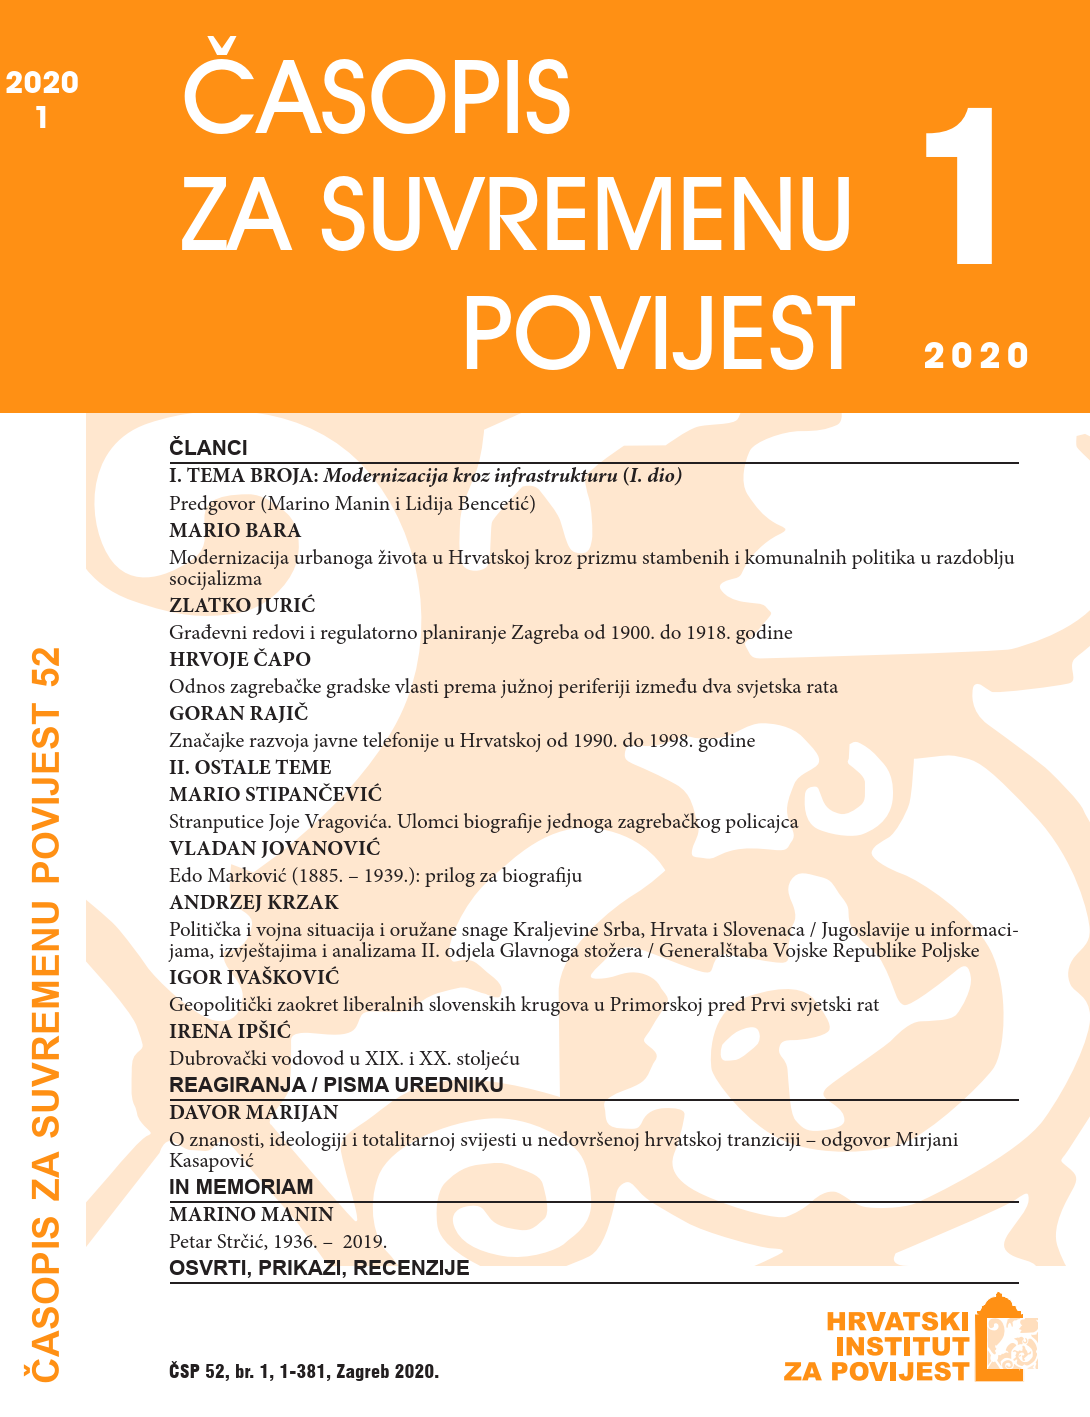 Modernizacija urbanoga života u Hrvatskoj kroz prizmu stambenih i komunalnih politika u razdoblju socijalizma